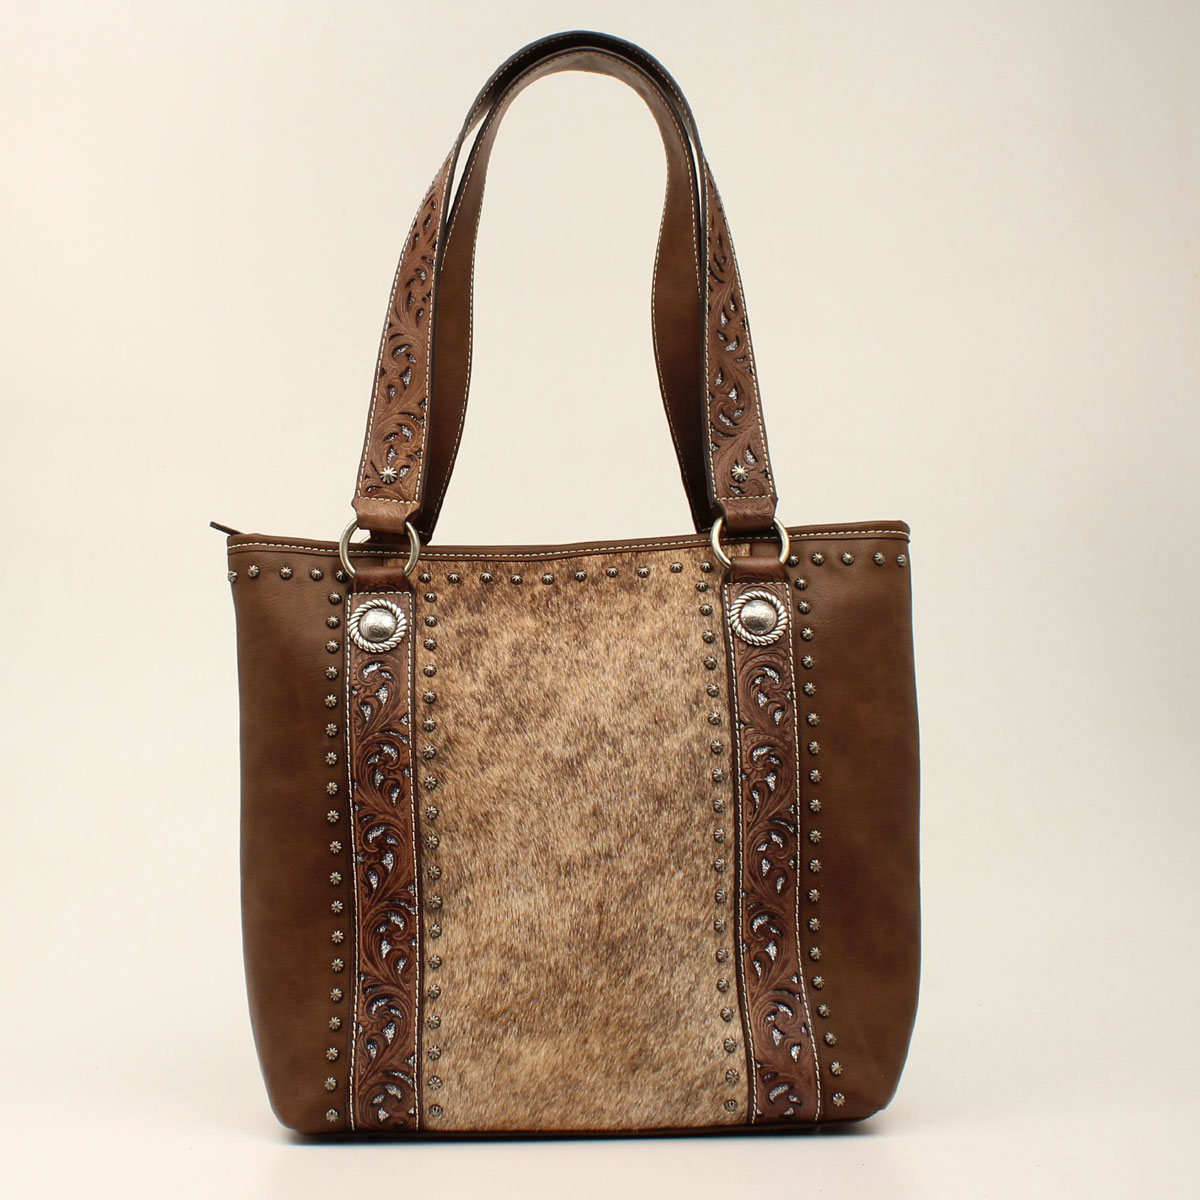 N770001902 Lynlee Style Tote Bag, Brown - 15 X 12 X 4.75 In.